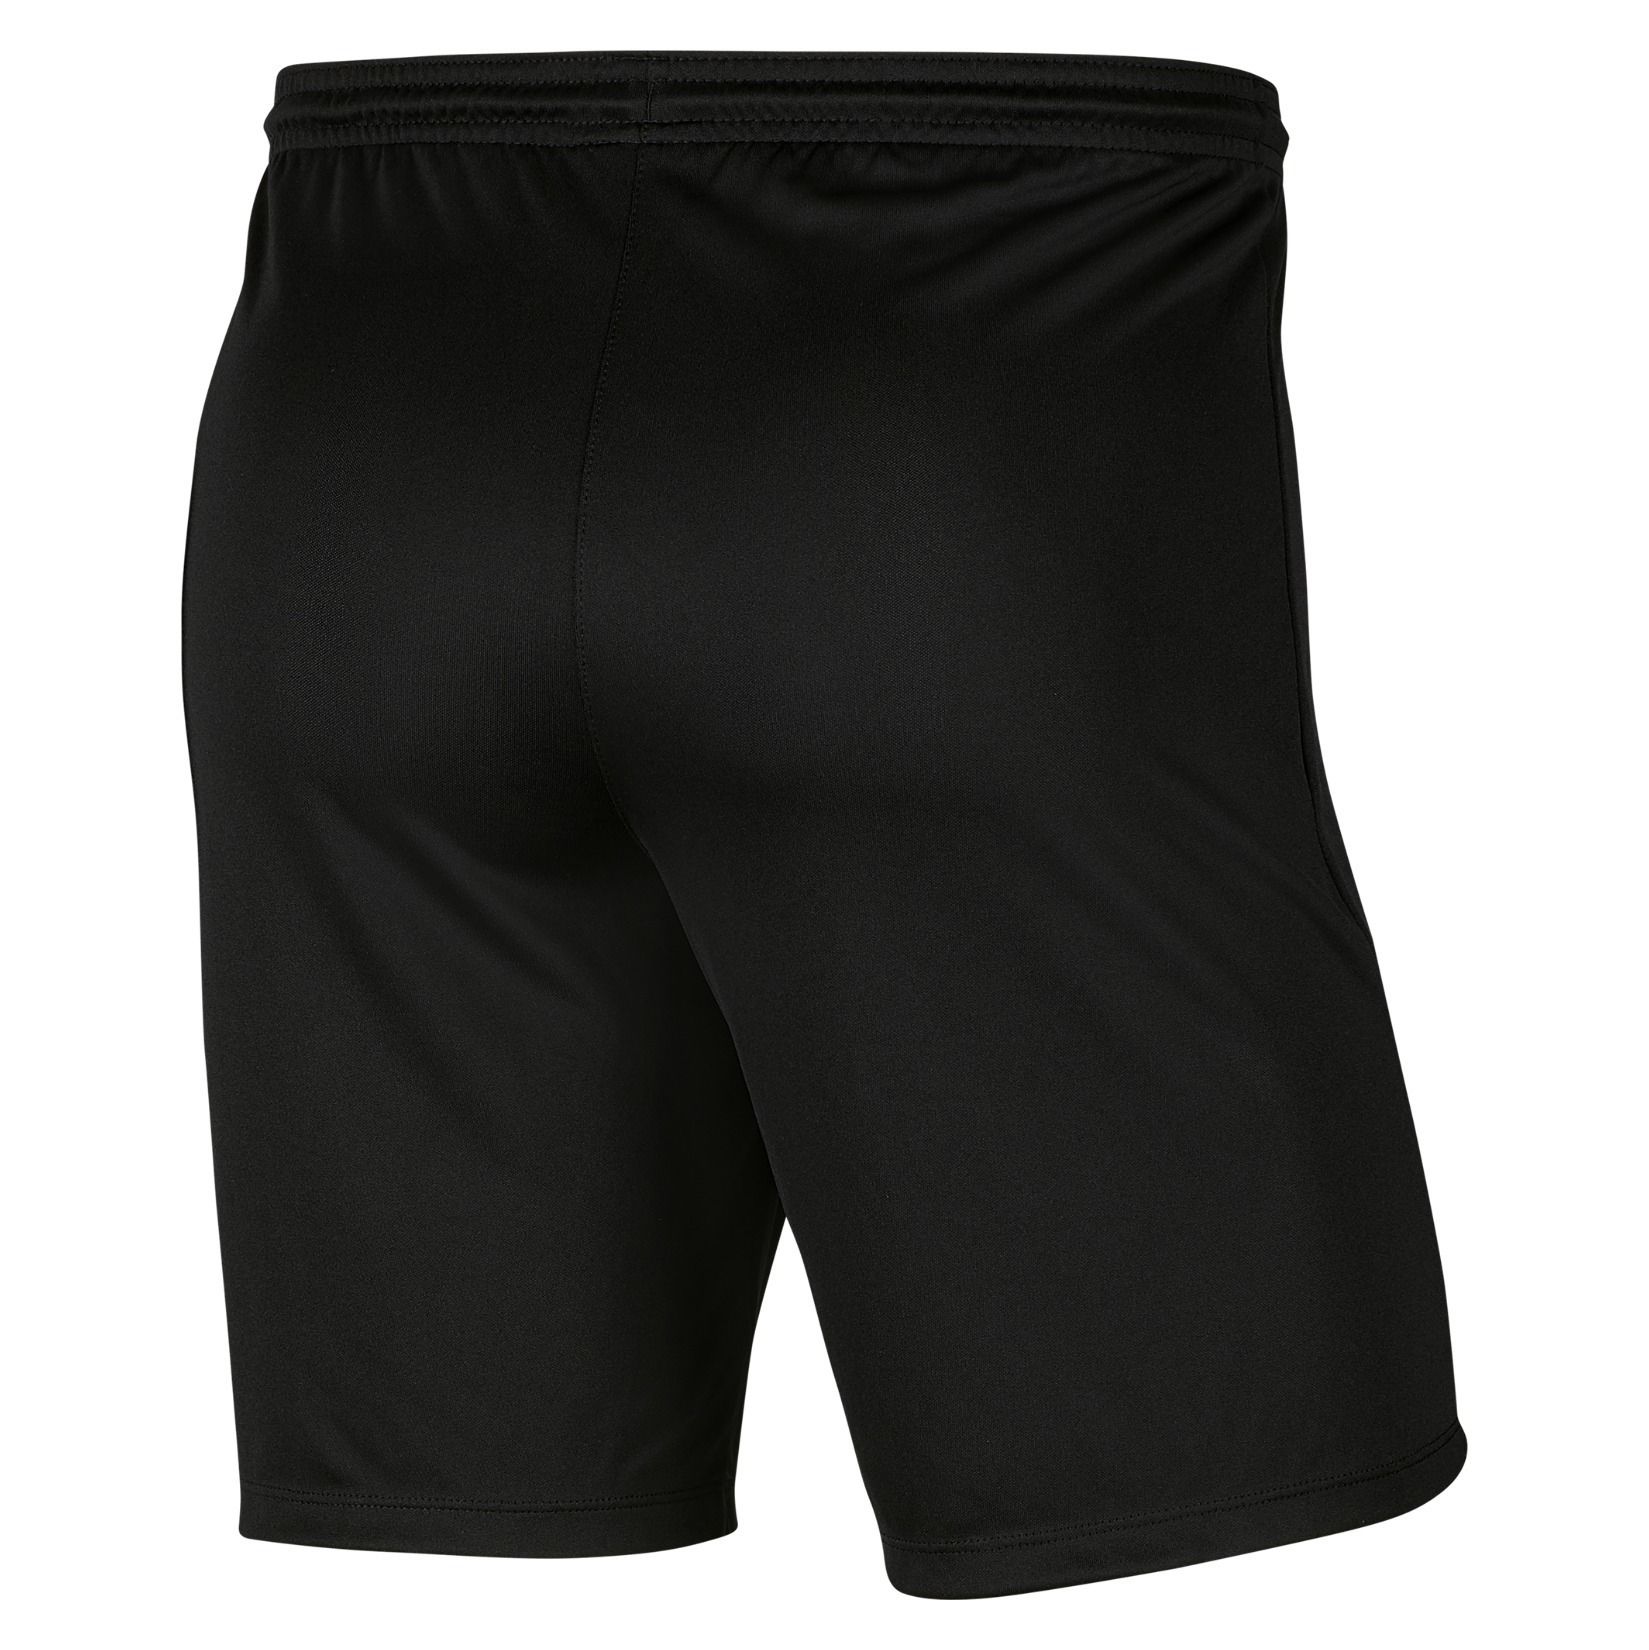 Nike Dri-FIT Park III Shorts - Kitlocker.com